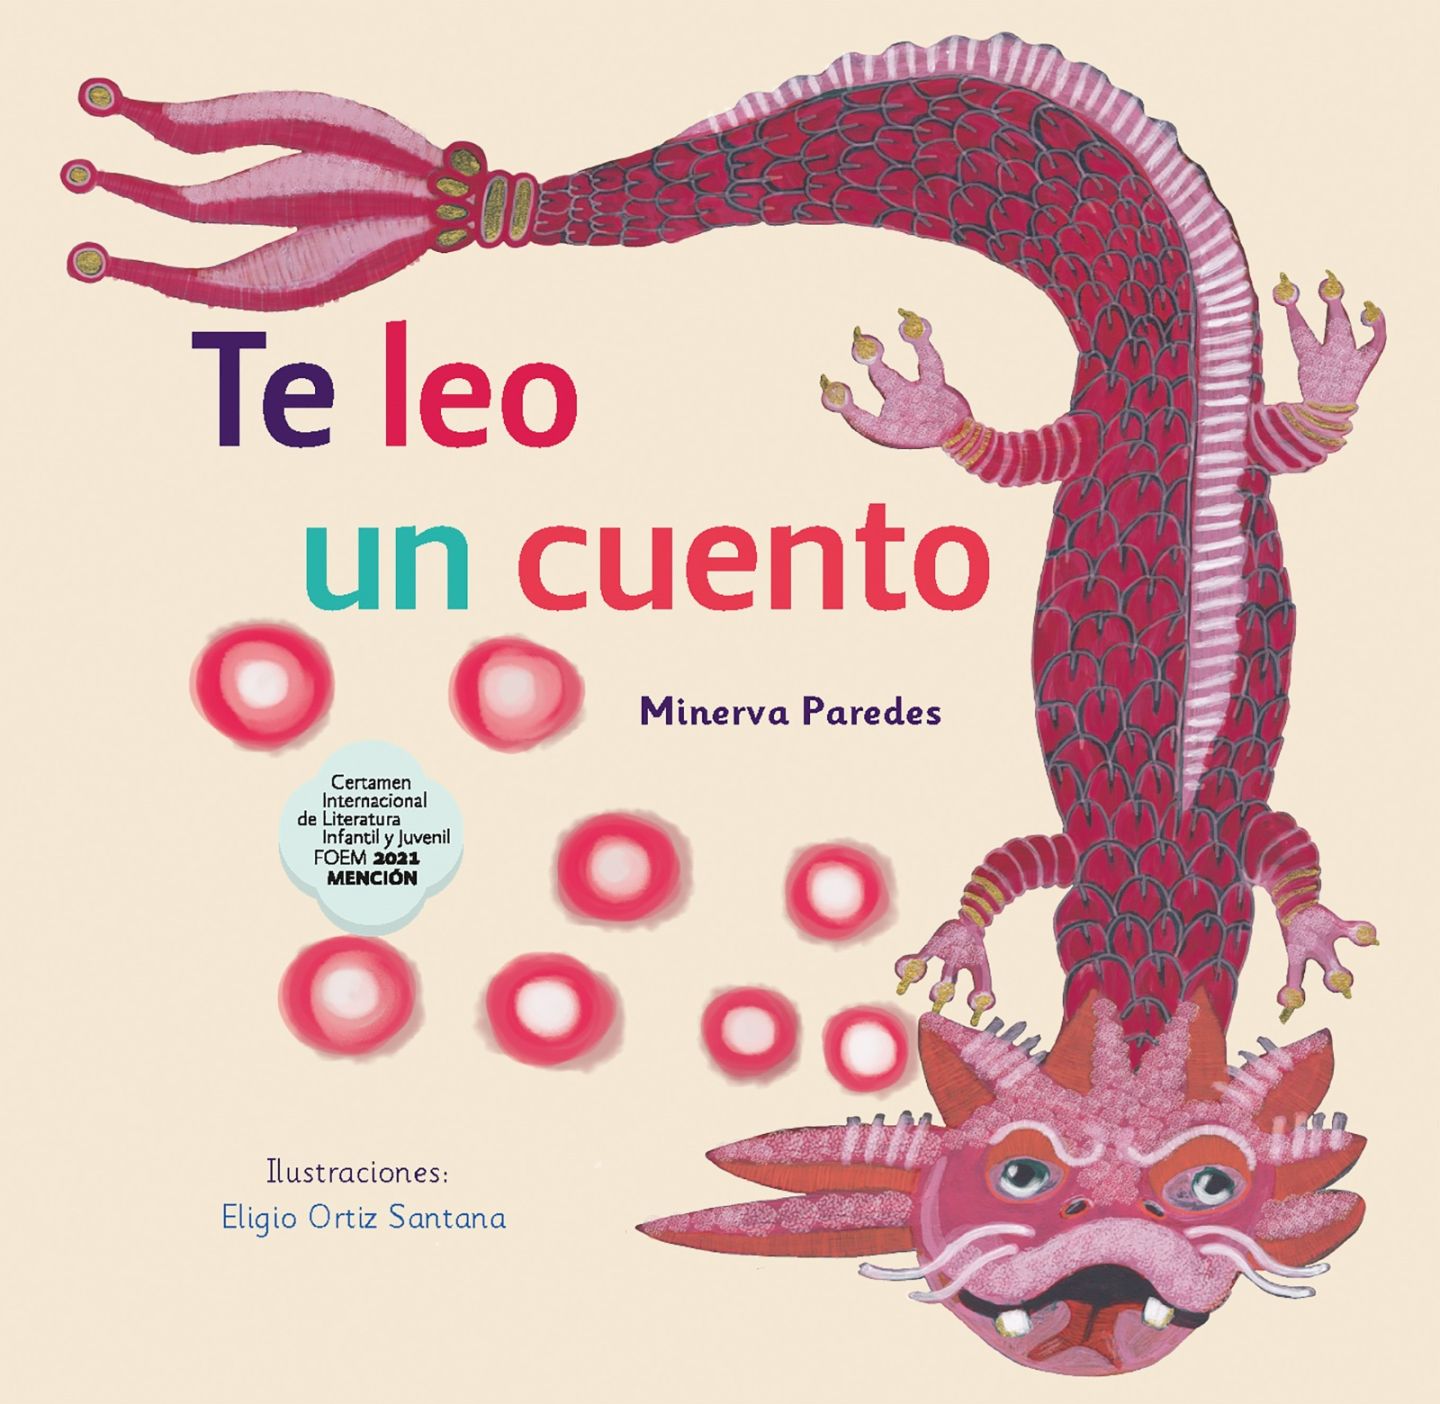 Colecciones del Fondo Editorial Estado de México Acercan la Lectura a niñas, niños y jóvenes
